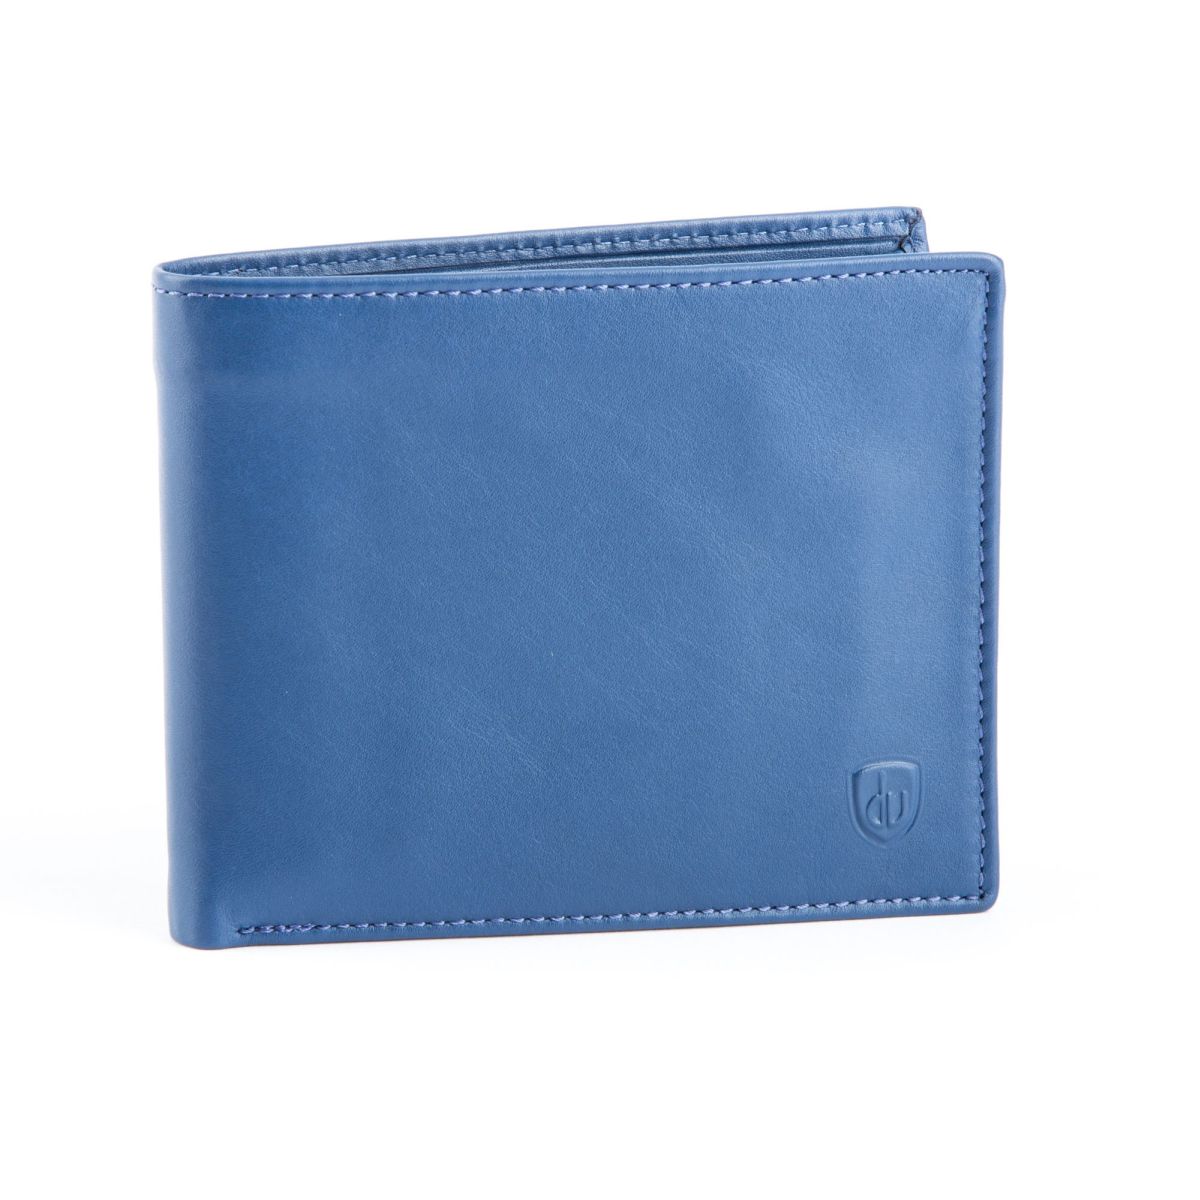 Buy Mens Leather Wallet Designer Men's Wallet Blue Leather Online in India  